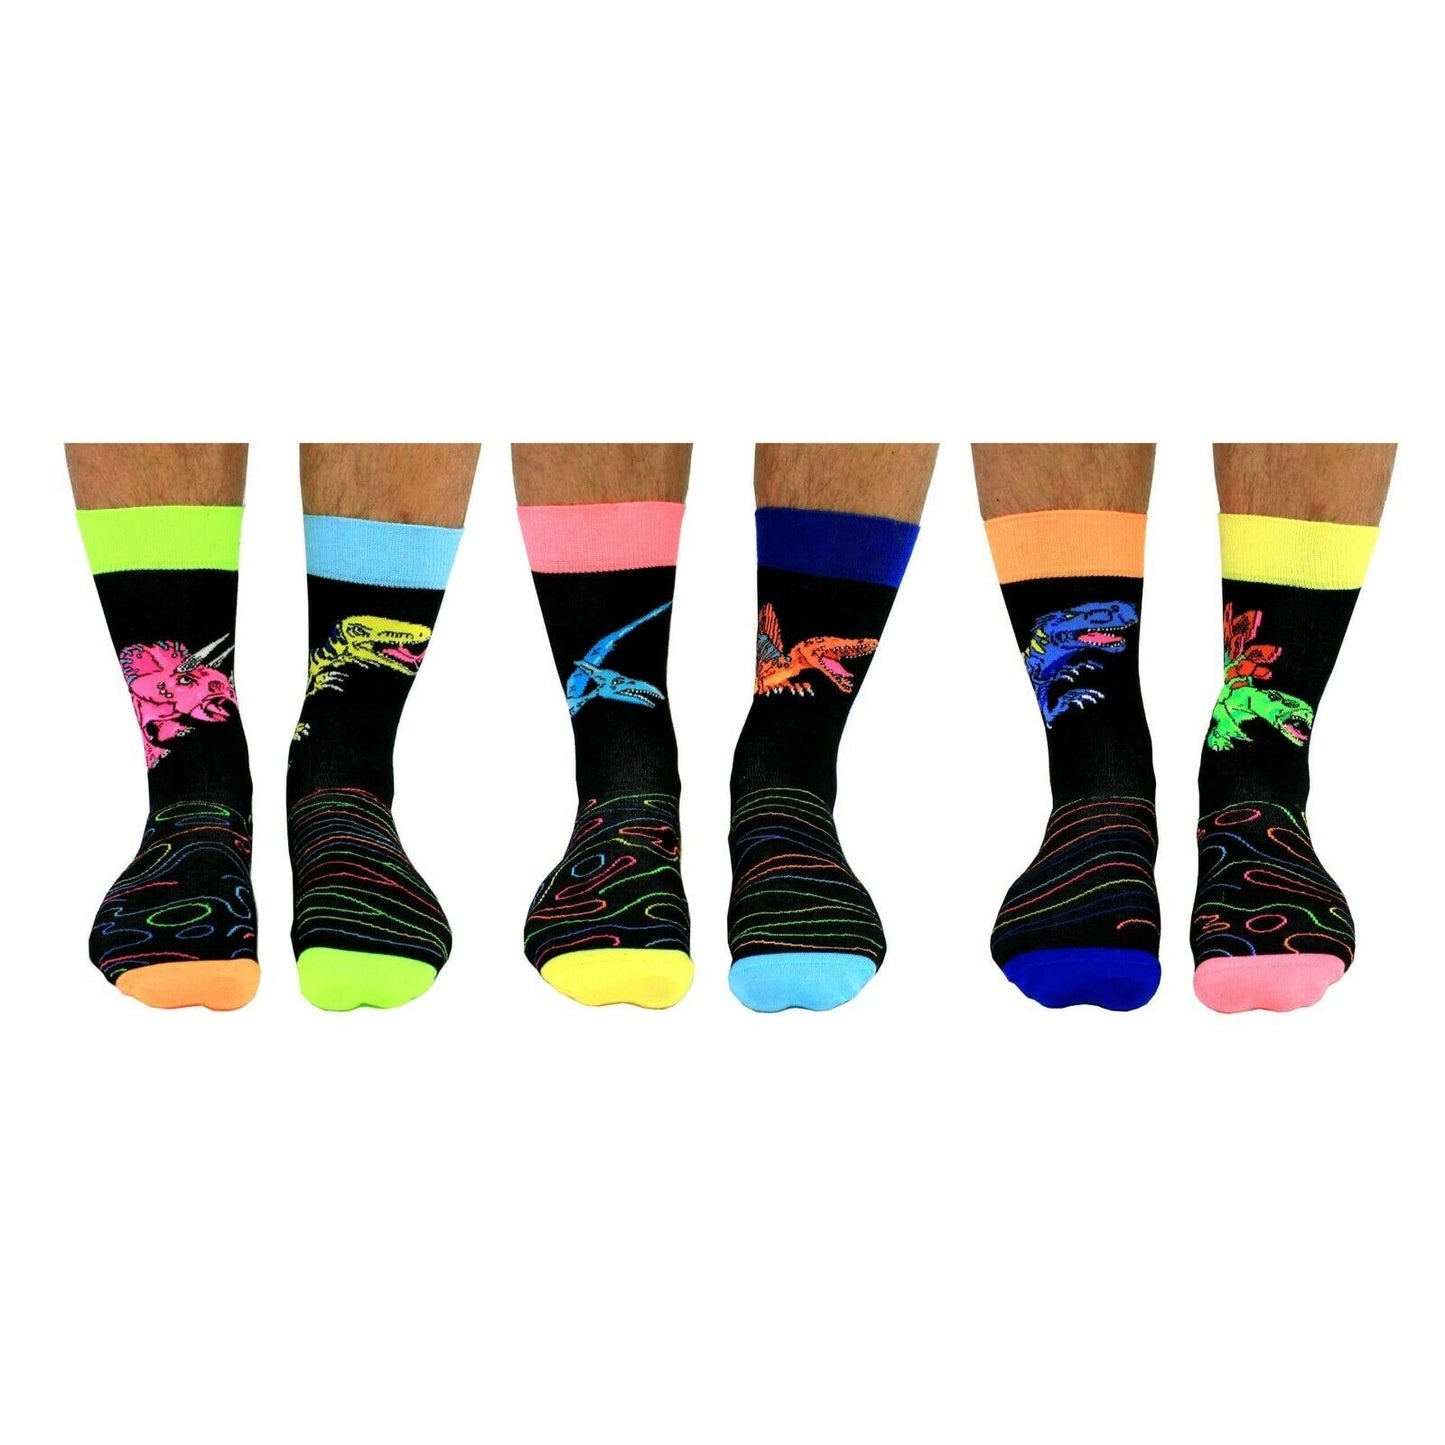 United Oddsocks DINOSOCKS Six Dinomite Odd Socks For Men Size 6 -11